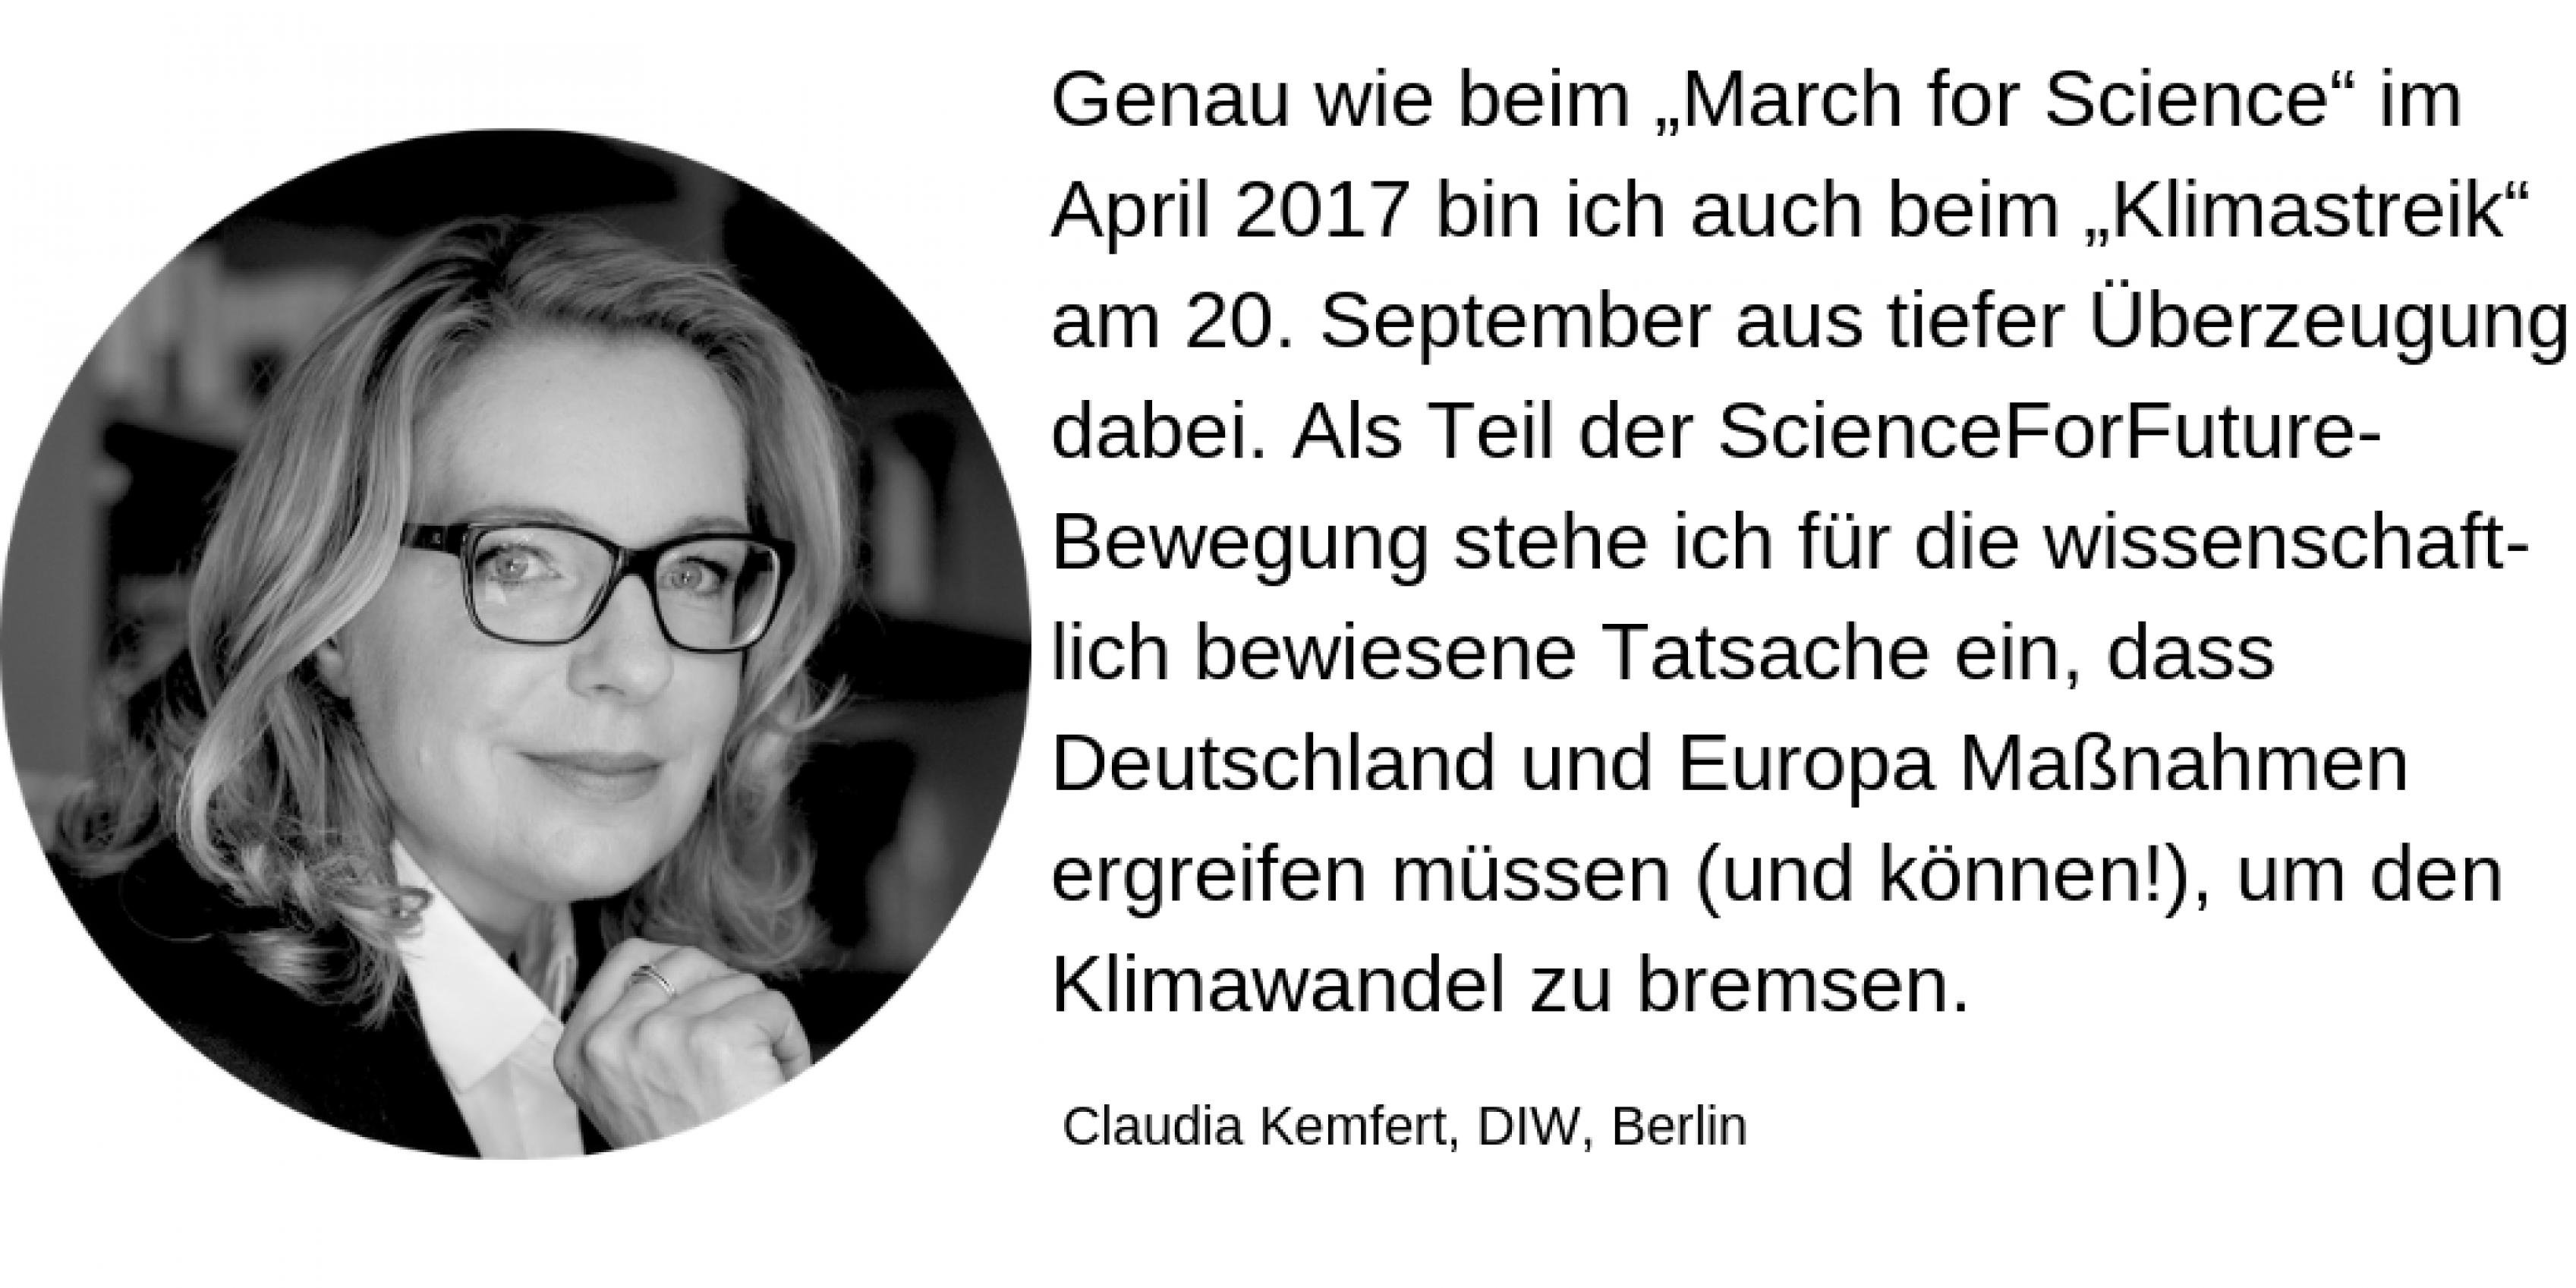 Claudia Kemfert, DIW, Berlin: Genau wie beim „March for Science“ im April 2017 bin ich auch beim „Klimastreik“ am 20. September aus tiefer Überzeugung dabei. Als Teil der ScienceForFuture-Bewegung stehe ich für die wissenschaftlich bewiesene Tatsache ein, dass Deutschland und Europa Maßnahmen ergreifen müssen (und können!), um den Klimawandel zu bremsen.